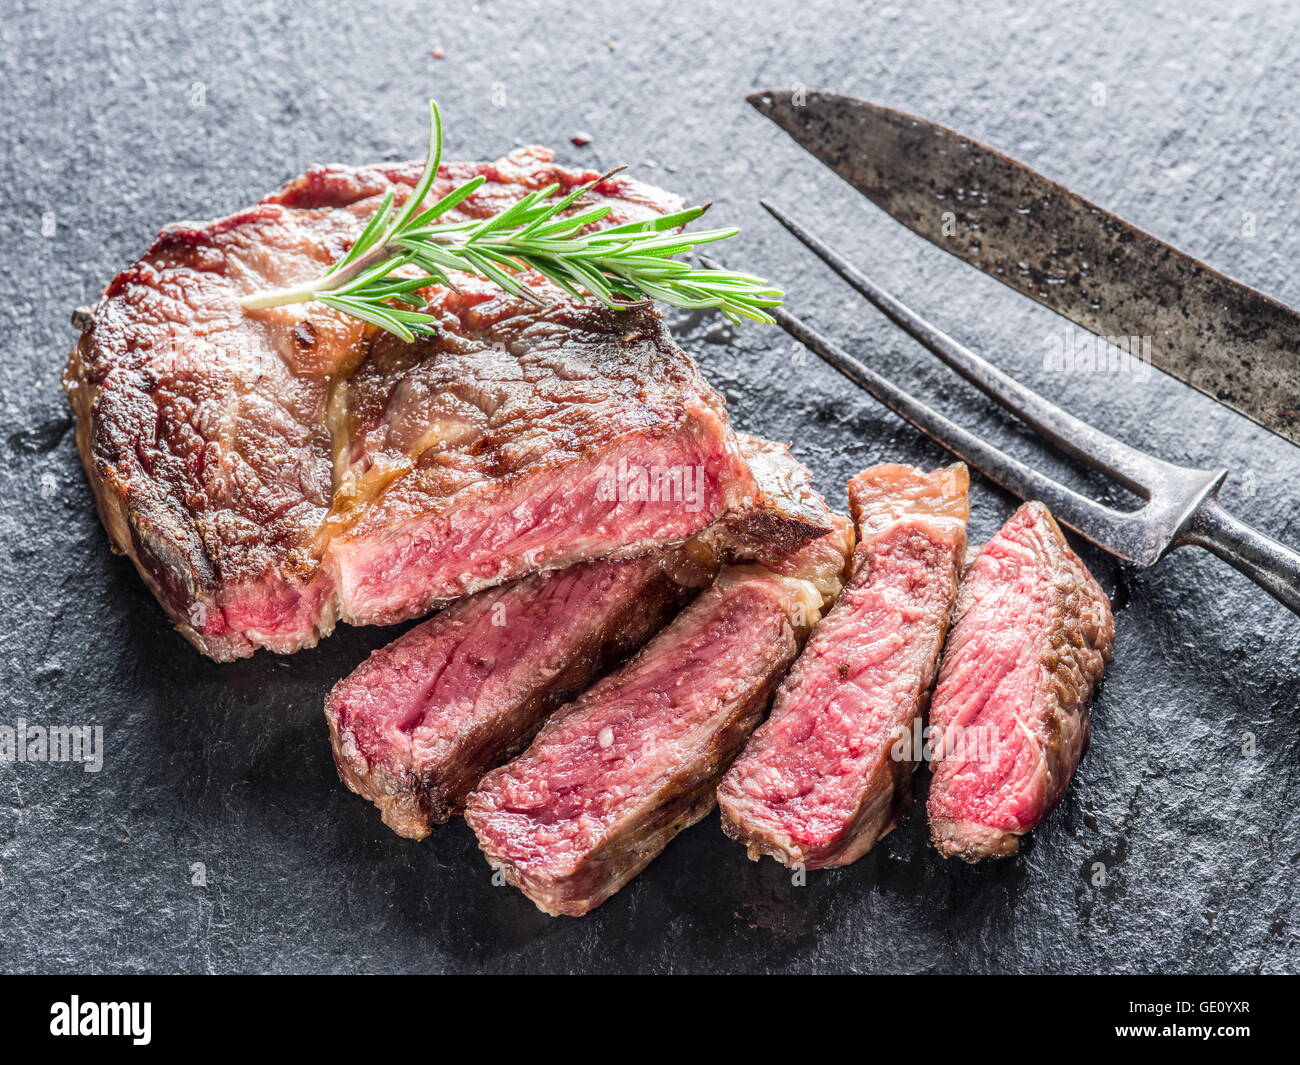 Medium Rib eye steak on the graphite tray. Stock Photo